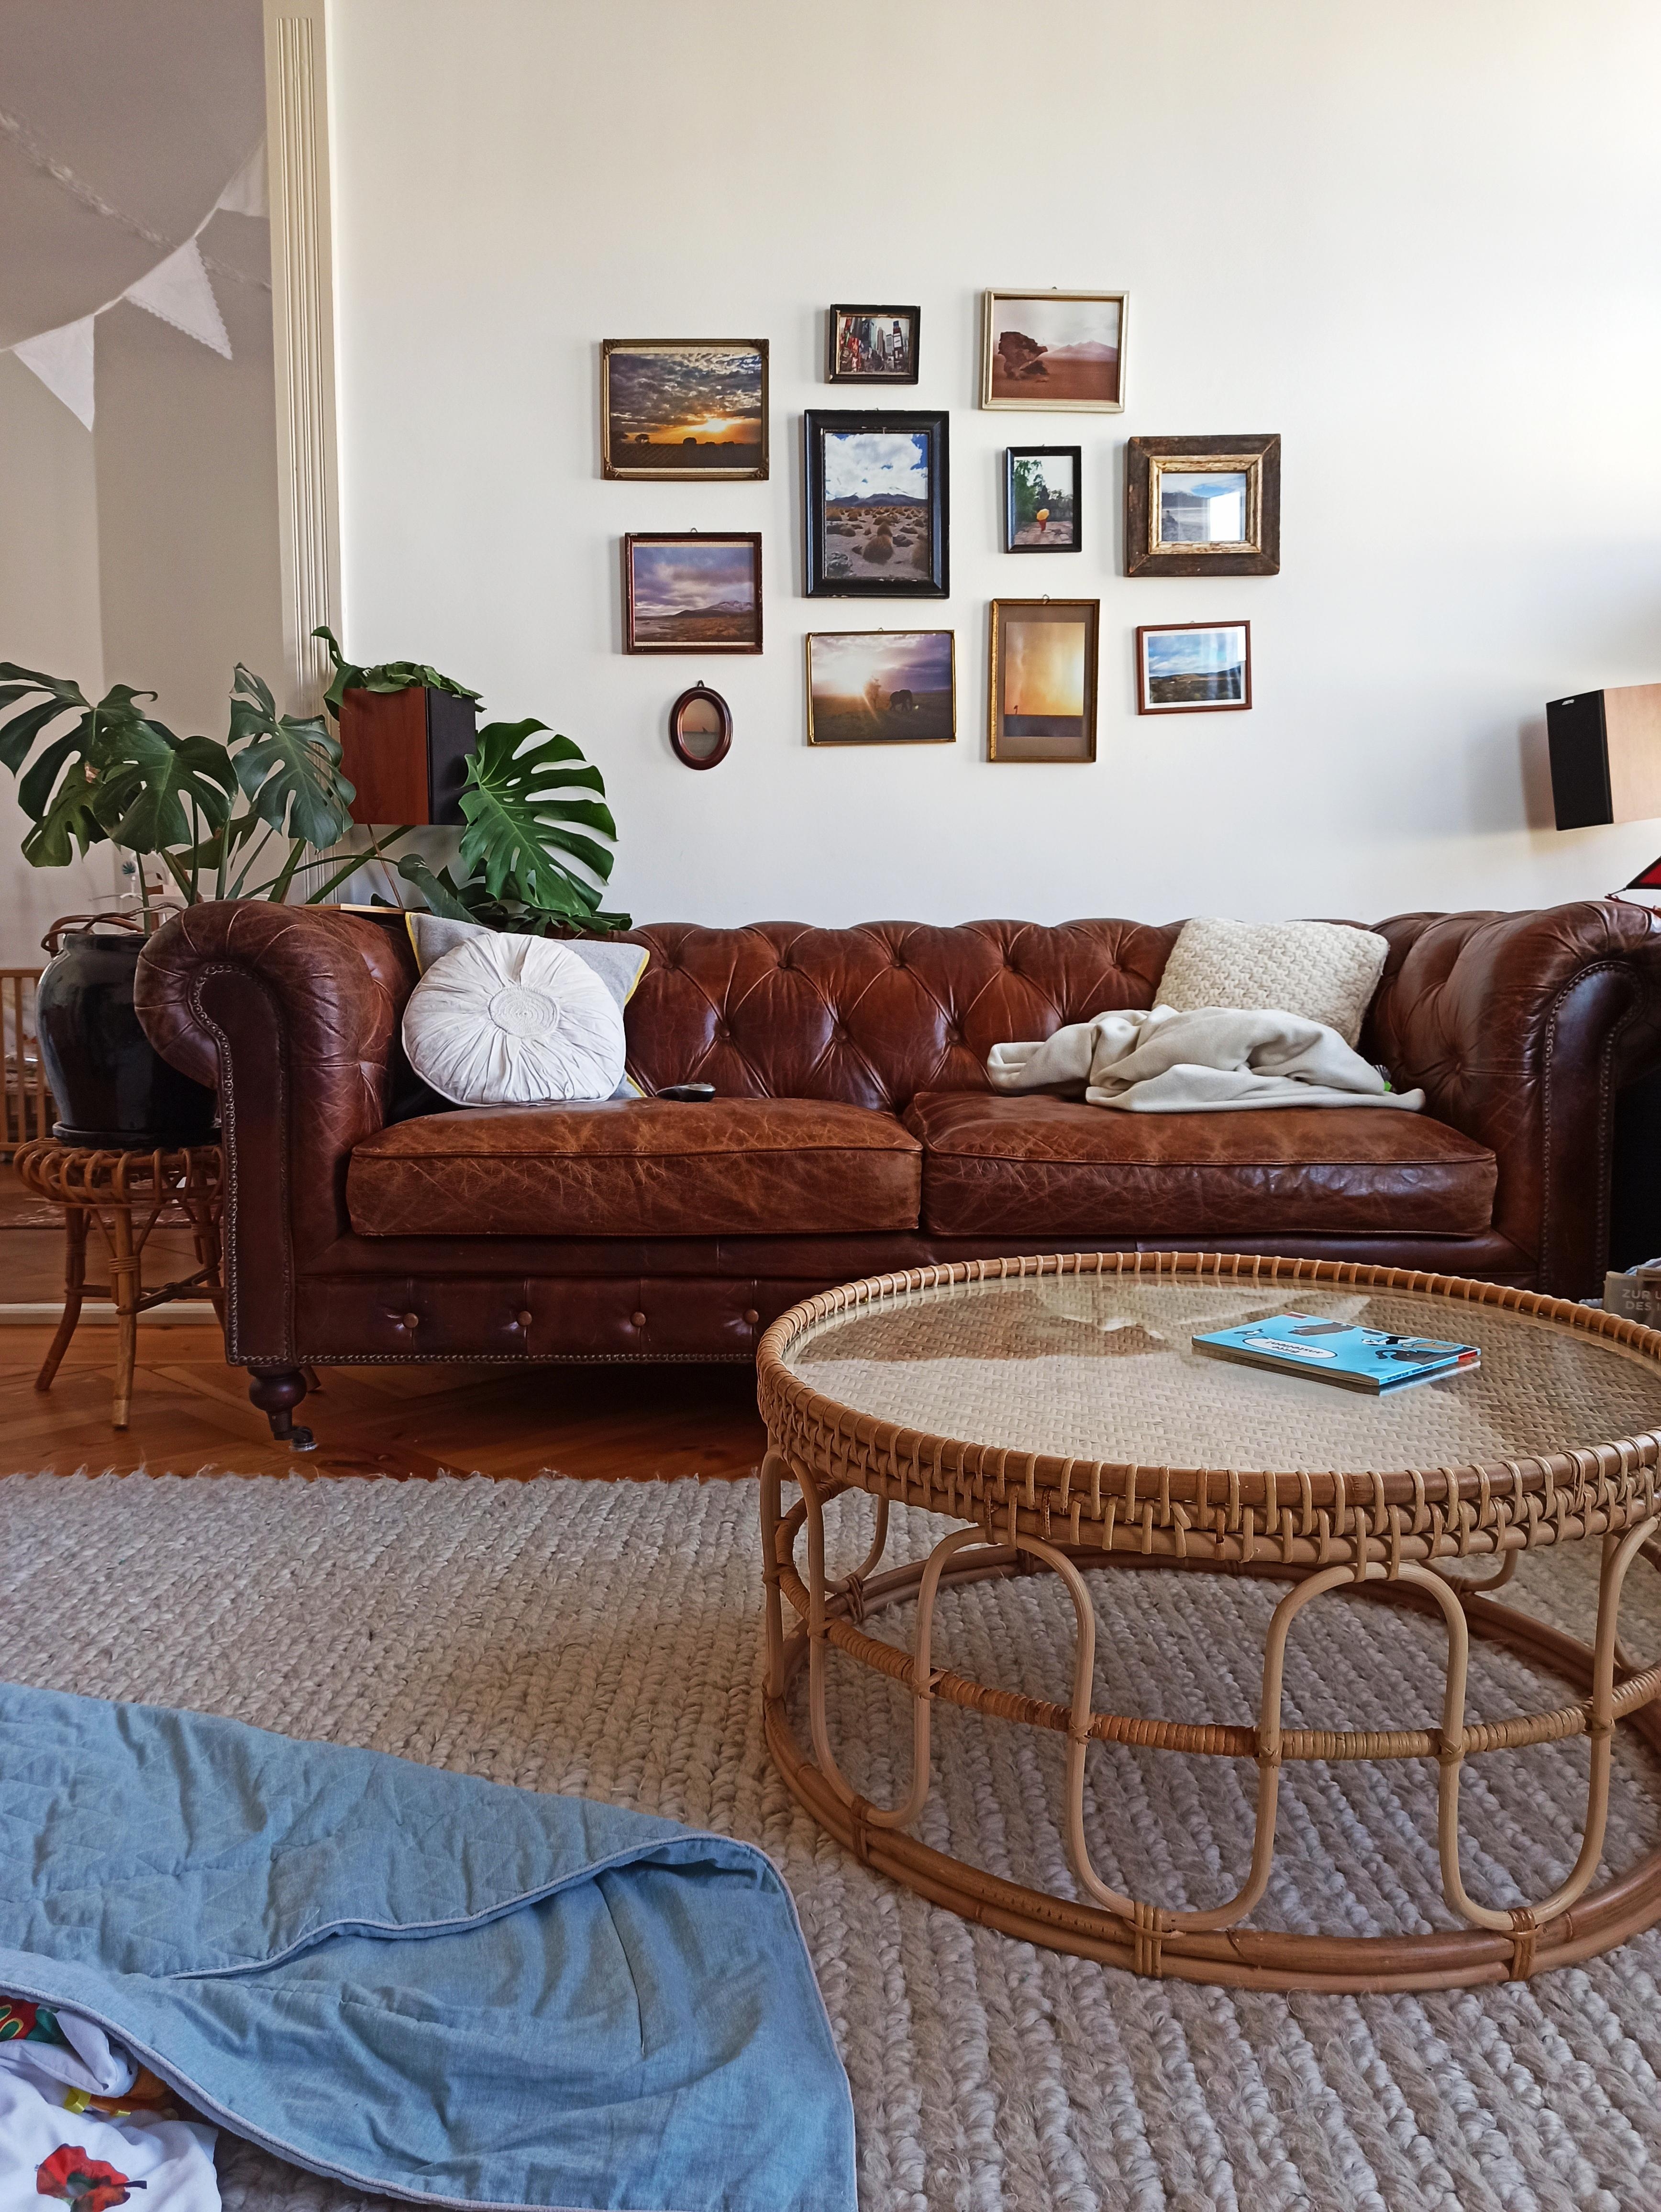 Schönes Wochenende!
#wohnzimmer #teppich #sofa #couch #bilderwand #couchtisch #altbau